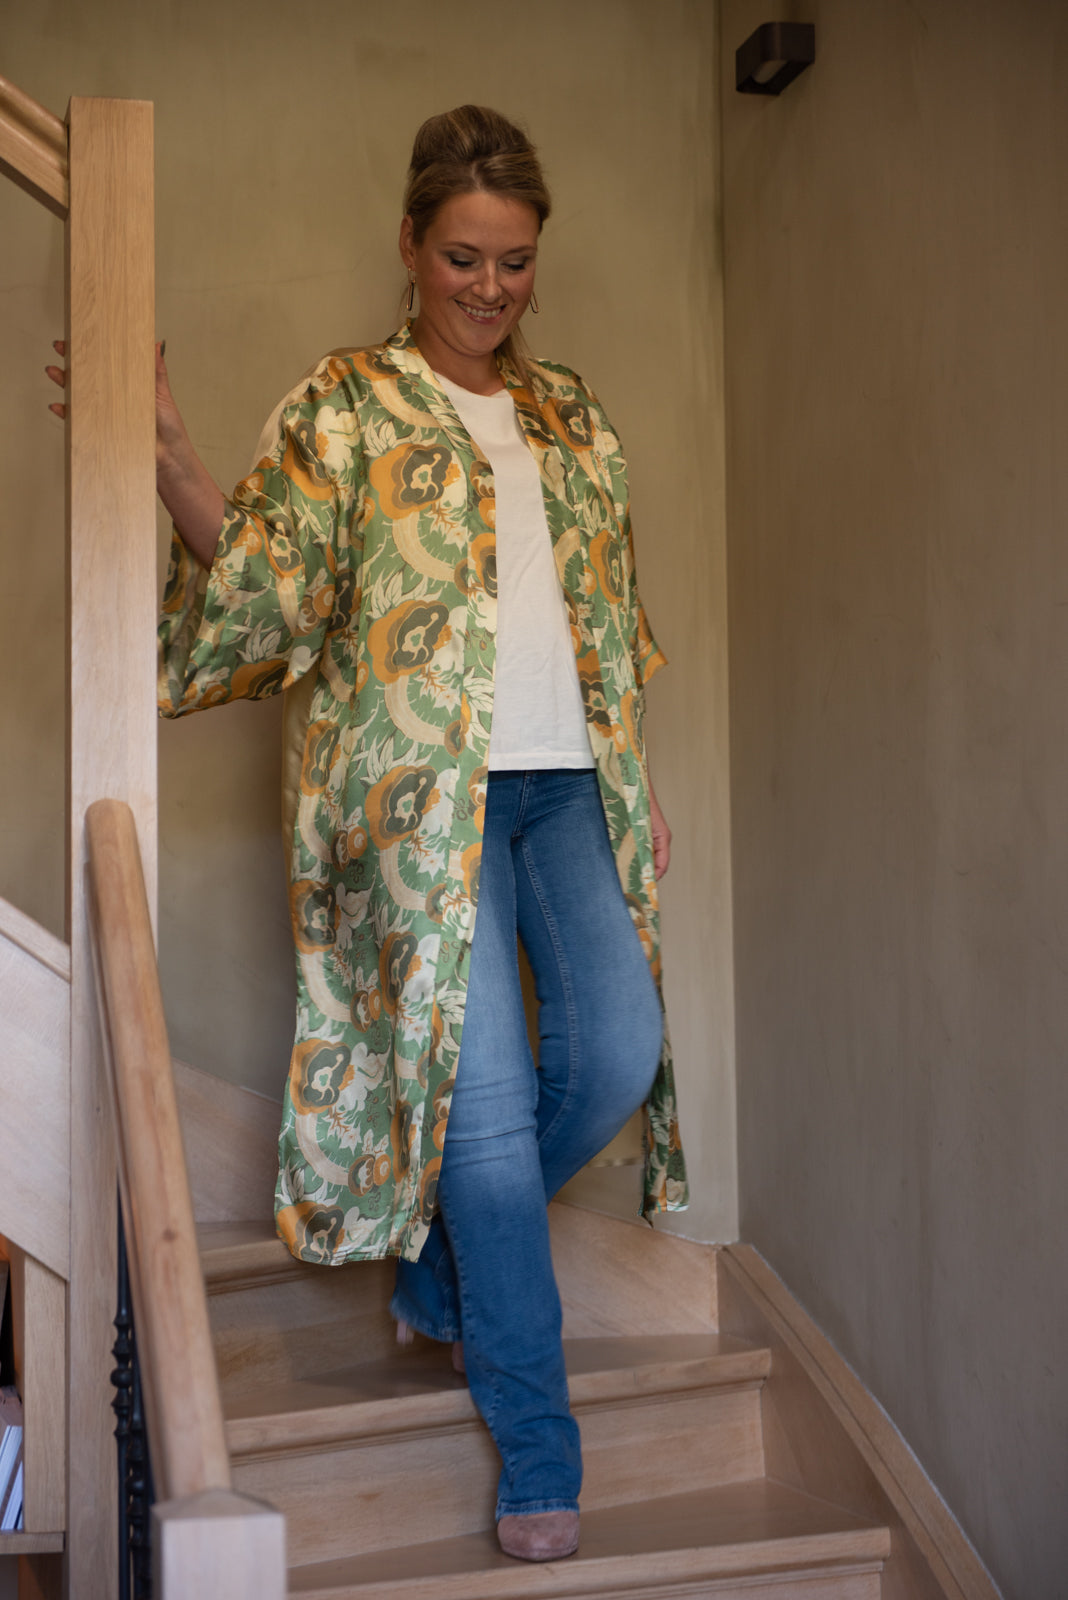 Exclusieve kimono kant en klaar om te dragen. Onmiddellijk leverbaar!